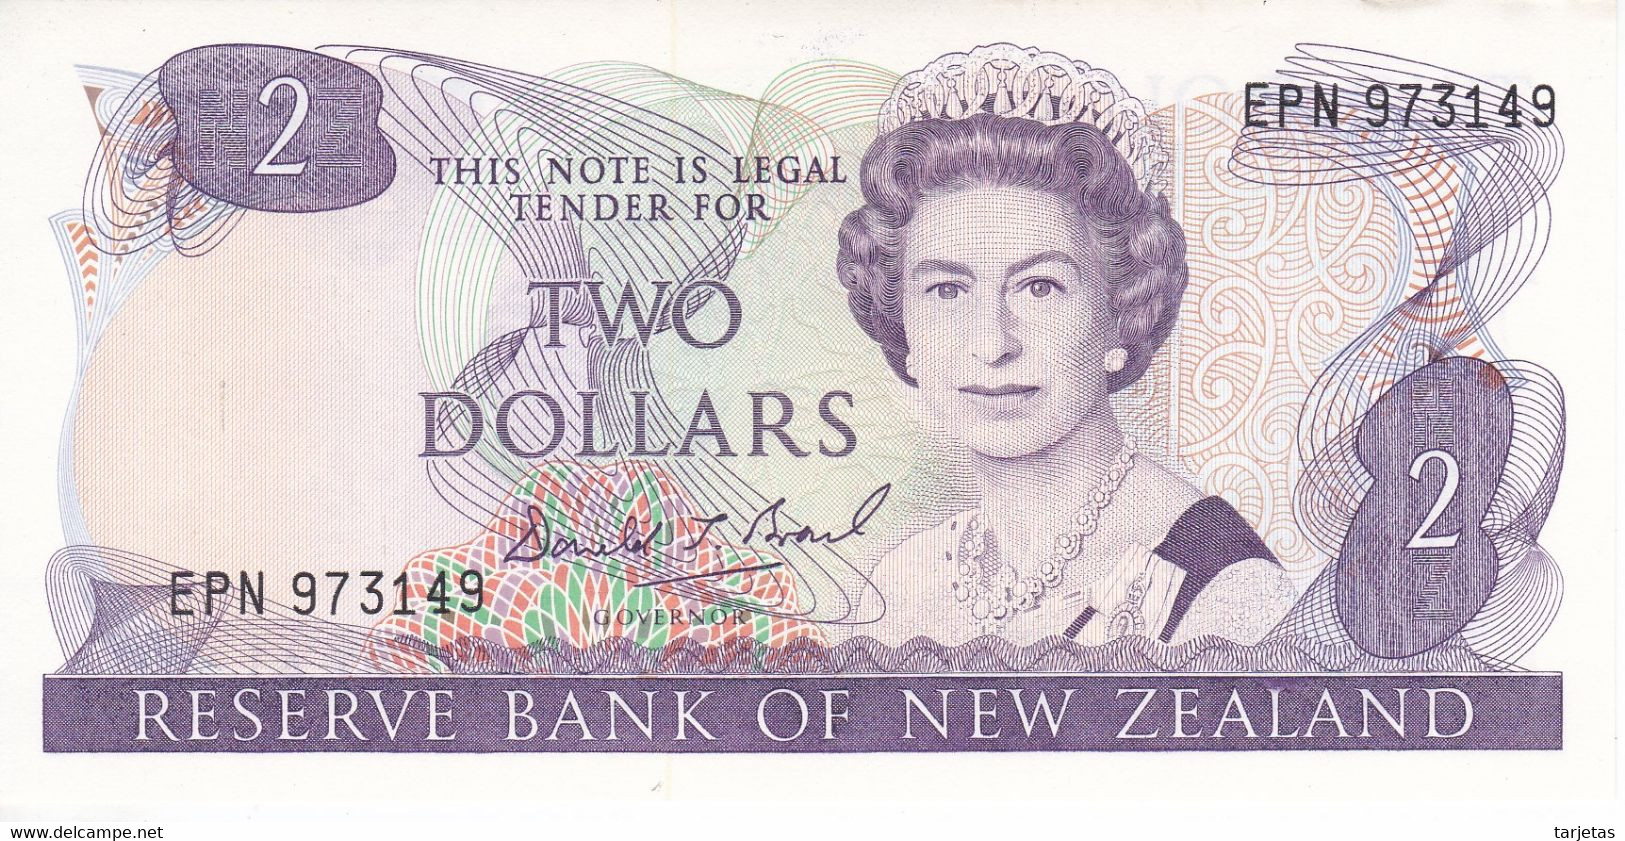 BILLETE DE NUEVA ZELANDA DE 2 DOLLARS DEL AÑO 1985 SIN CIRCULAR (UNC) (BIRD-PAJARO) (BANKNOTE) - Nieuw-Zeeland